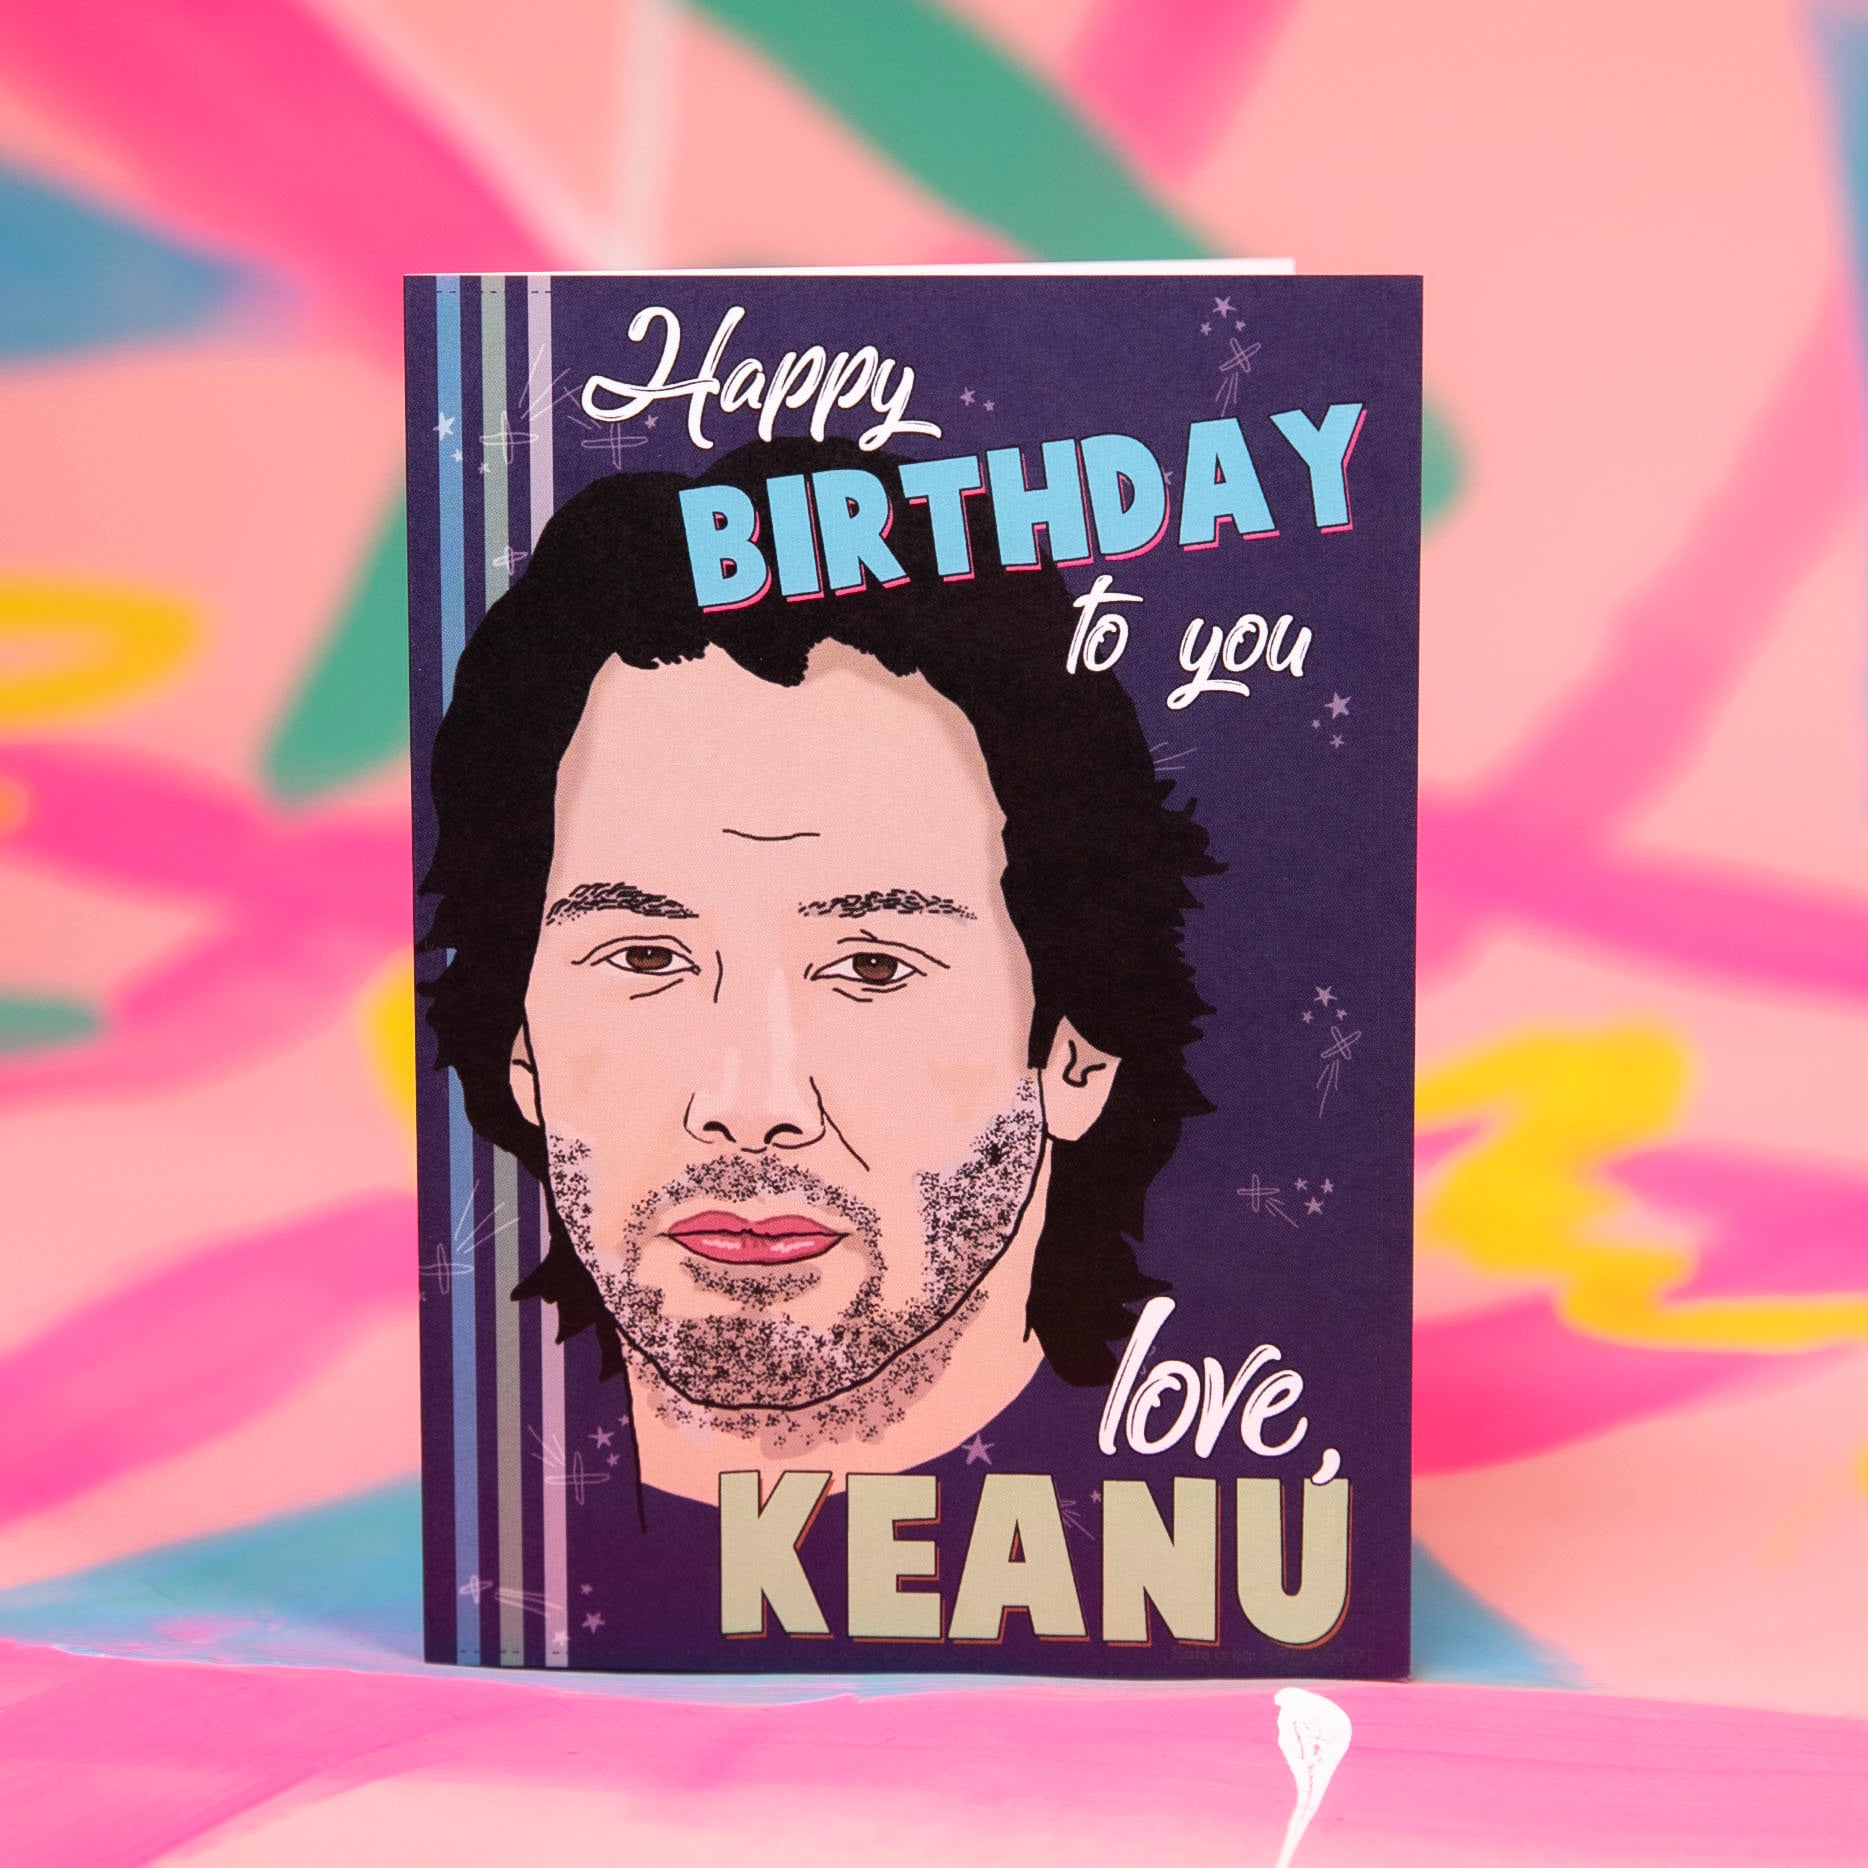 Keanu reeves fan card